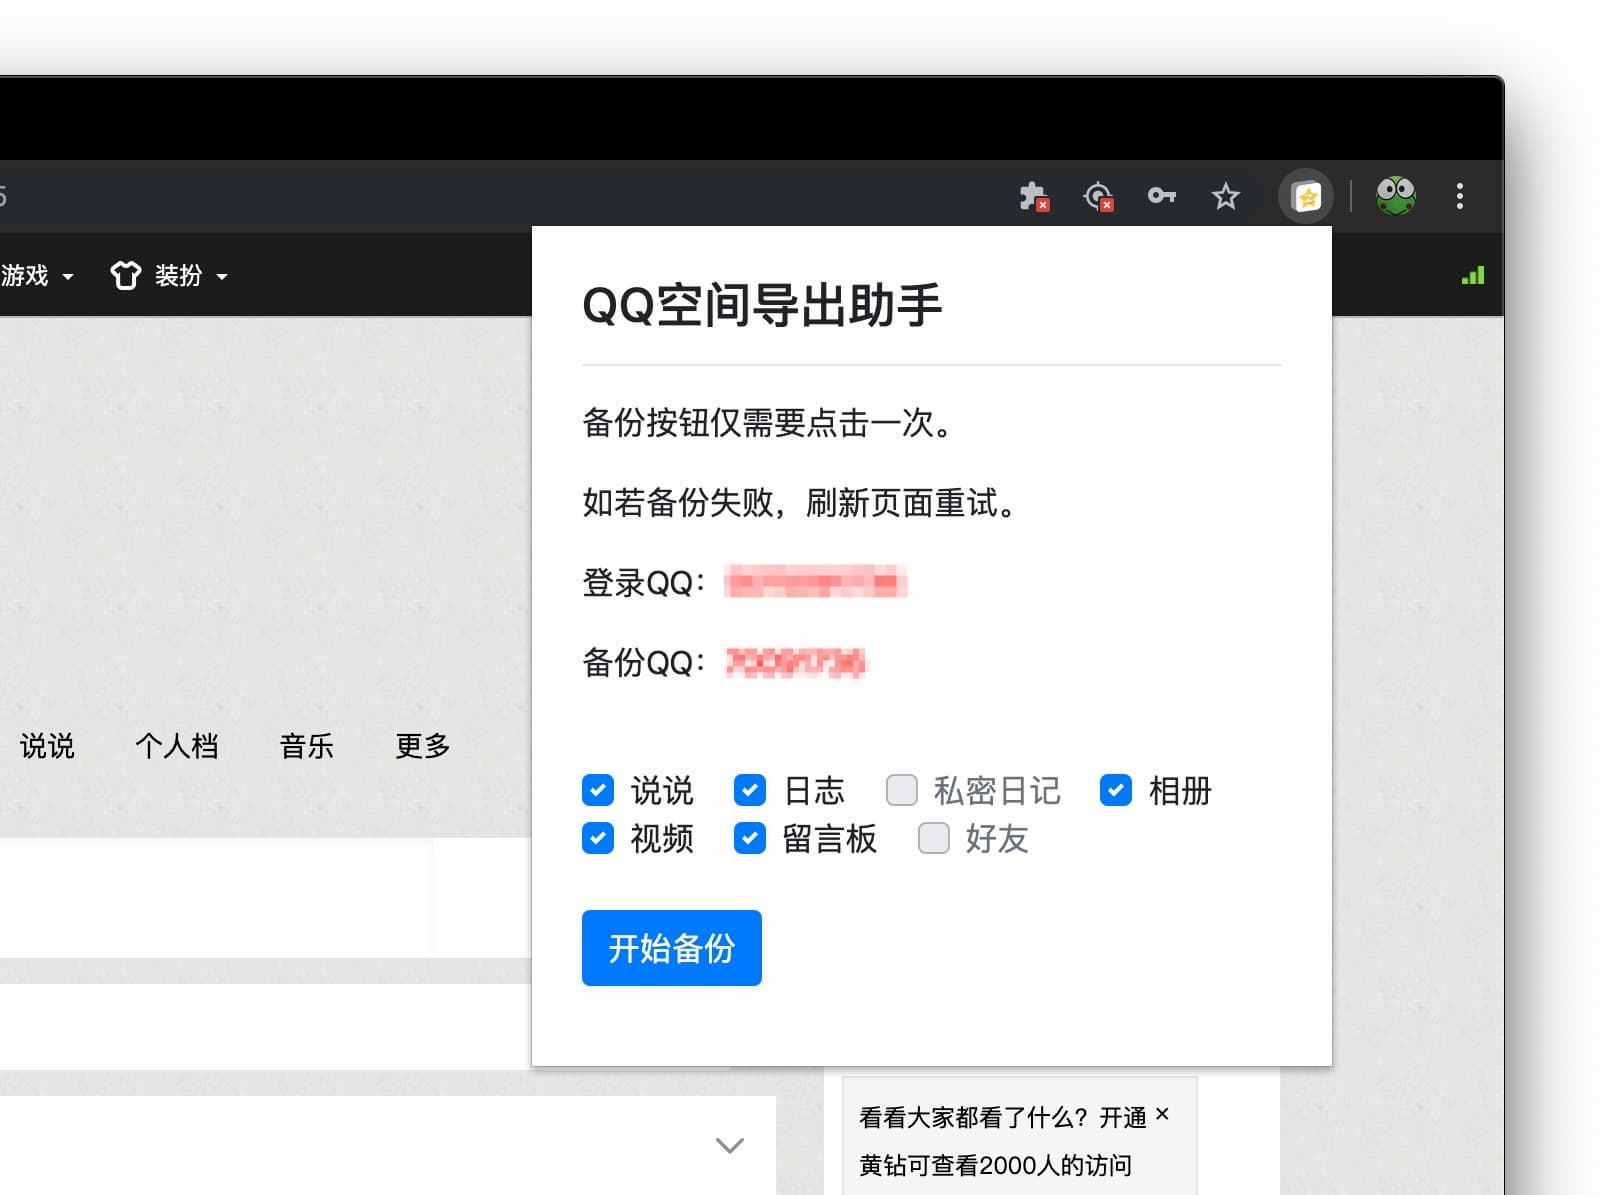 QQ空间导出助手 - 可导出说说、日志、私密日记、相册、视频、留言板、QQ 好友列表[Chrome] 2